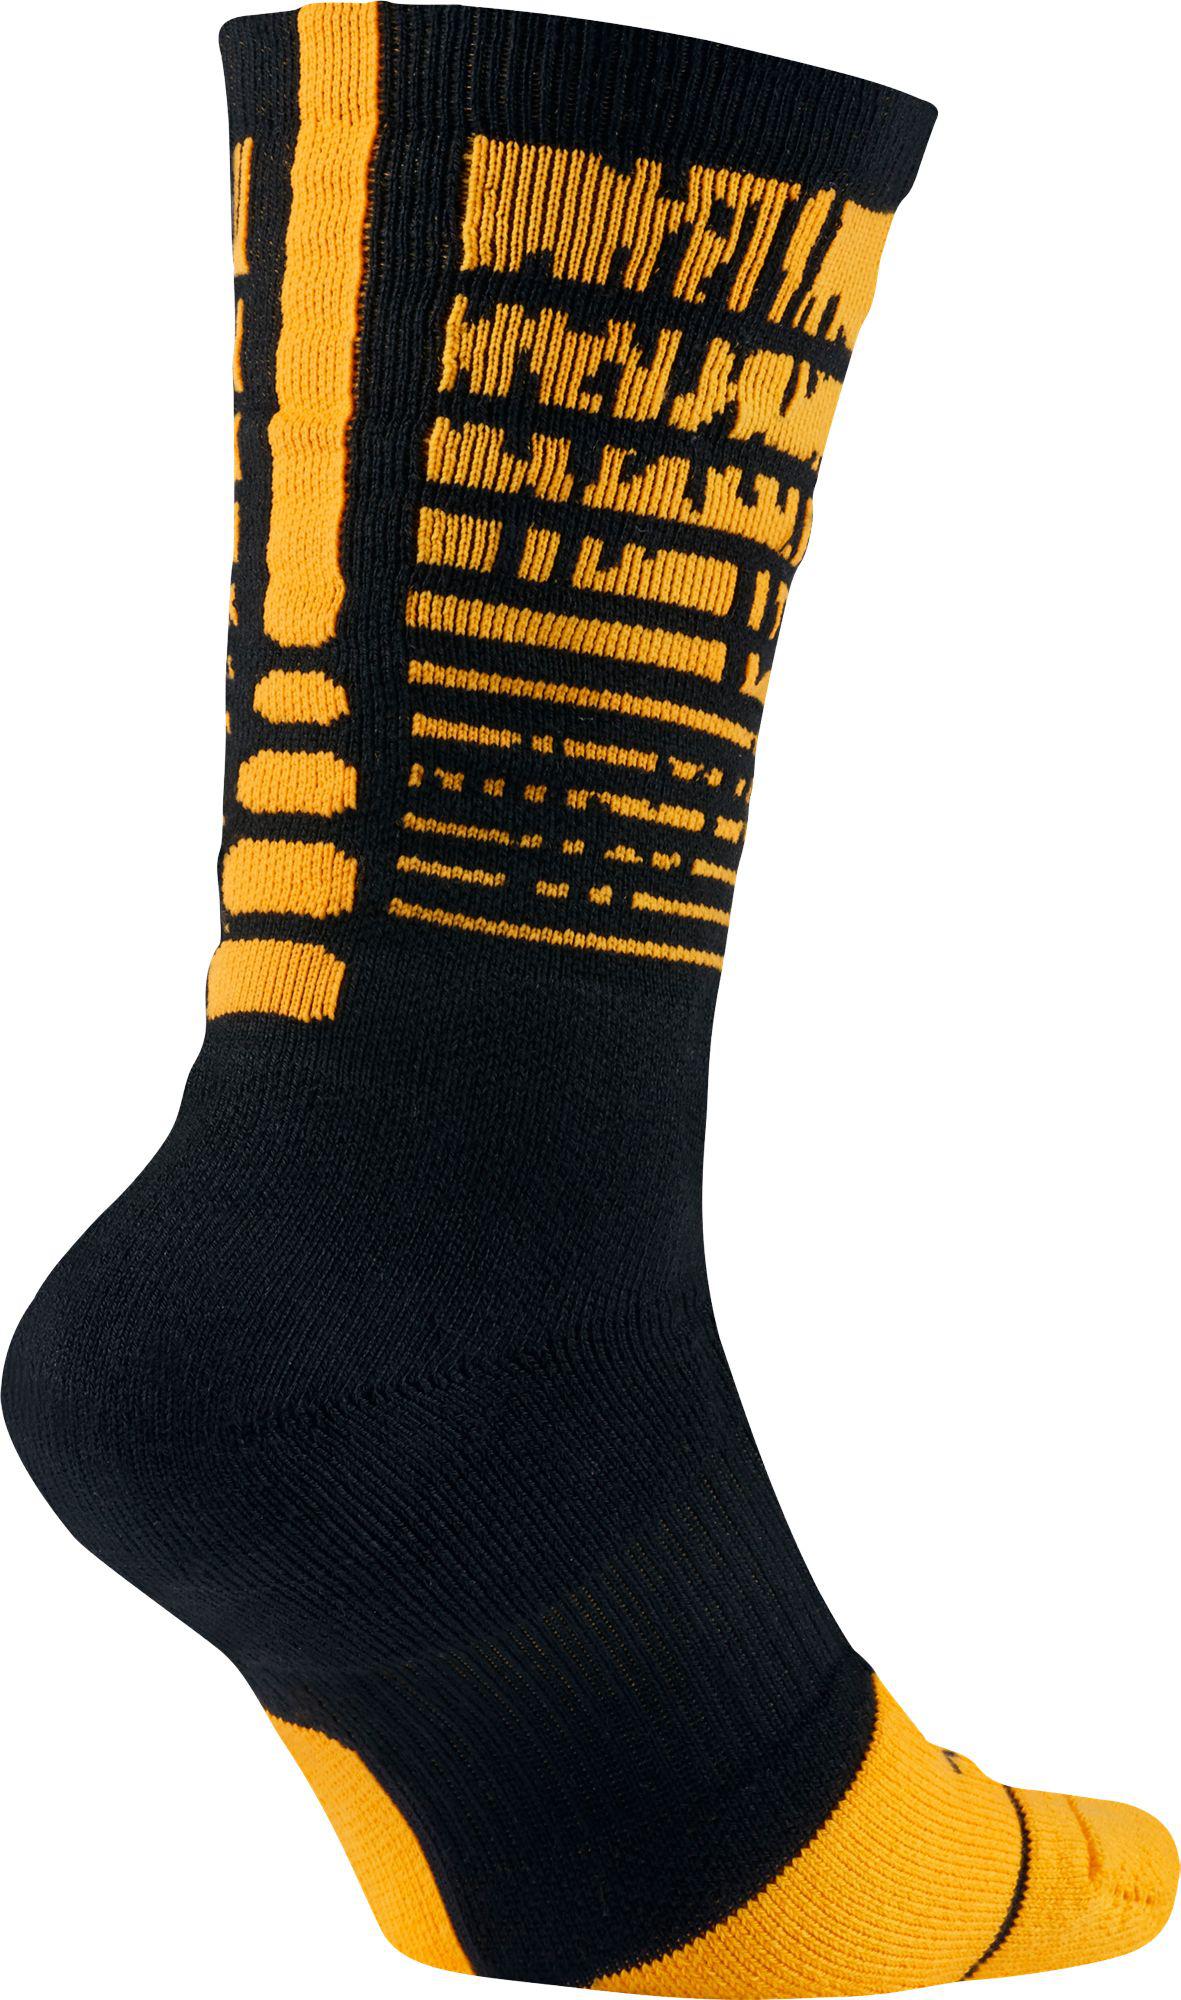 Nike Synthetic Elite Pulse Basketball Crew Socks in Black/Golden Yellow ( Black) for Men - Lyst